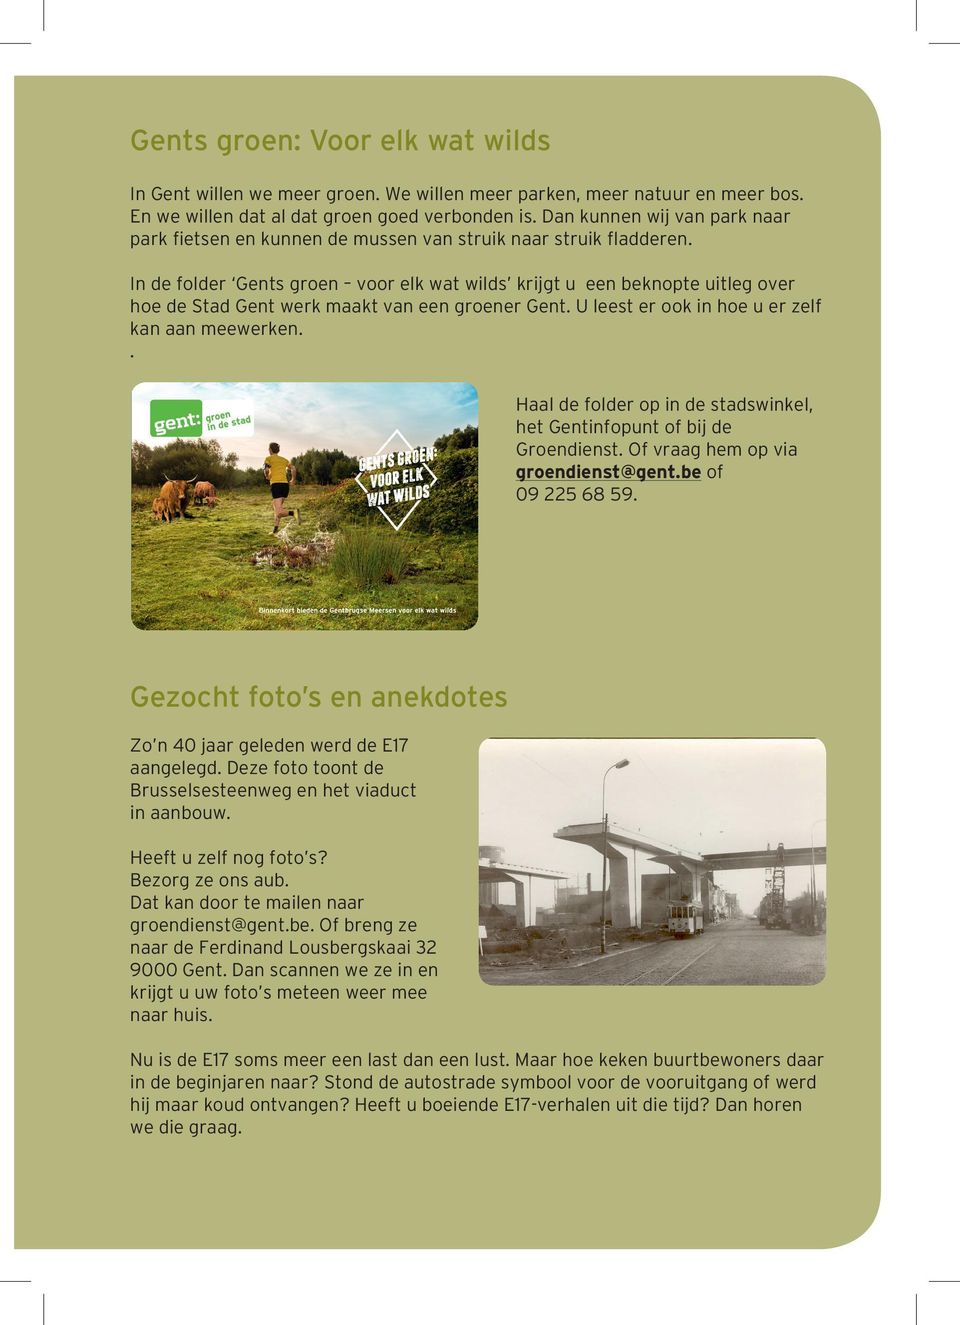 In de folder Gents groen voor elk wat wilds krijgt u een beknopte uitleg over hoe de Stad Gent werk maakt van een groener Gent. U leest er ook in hoe u er zelf kan aan meewerken.